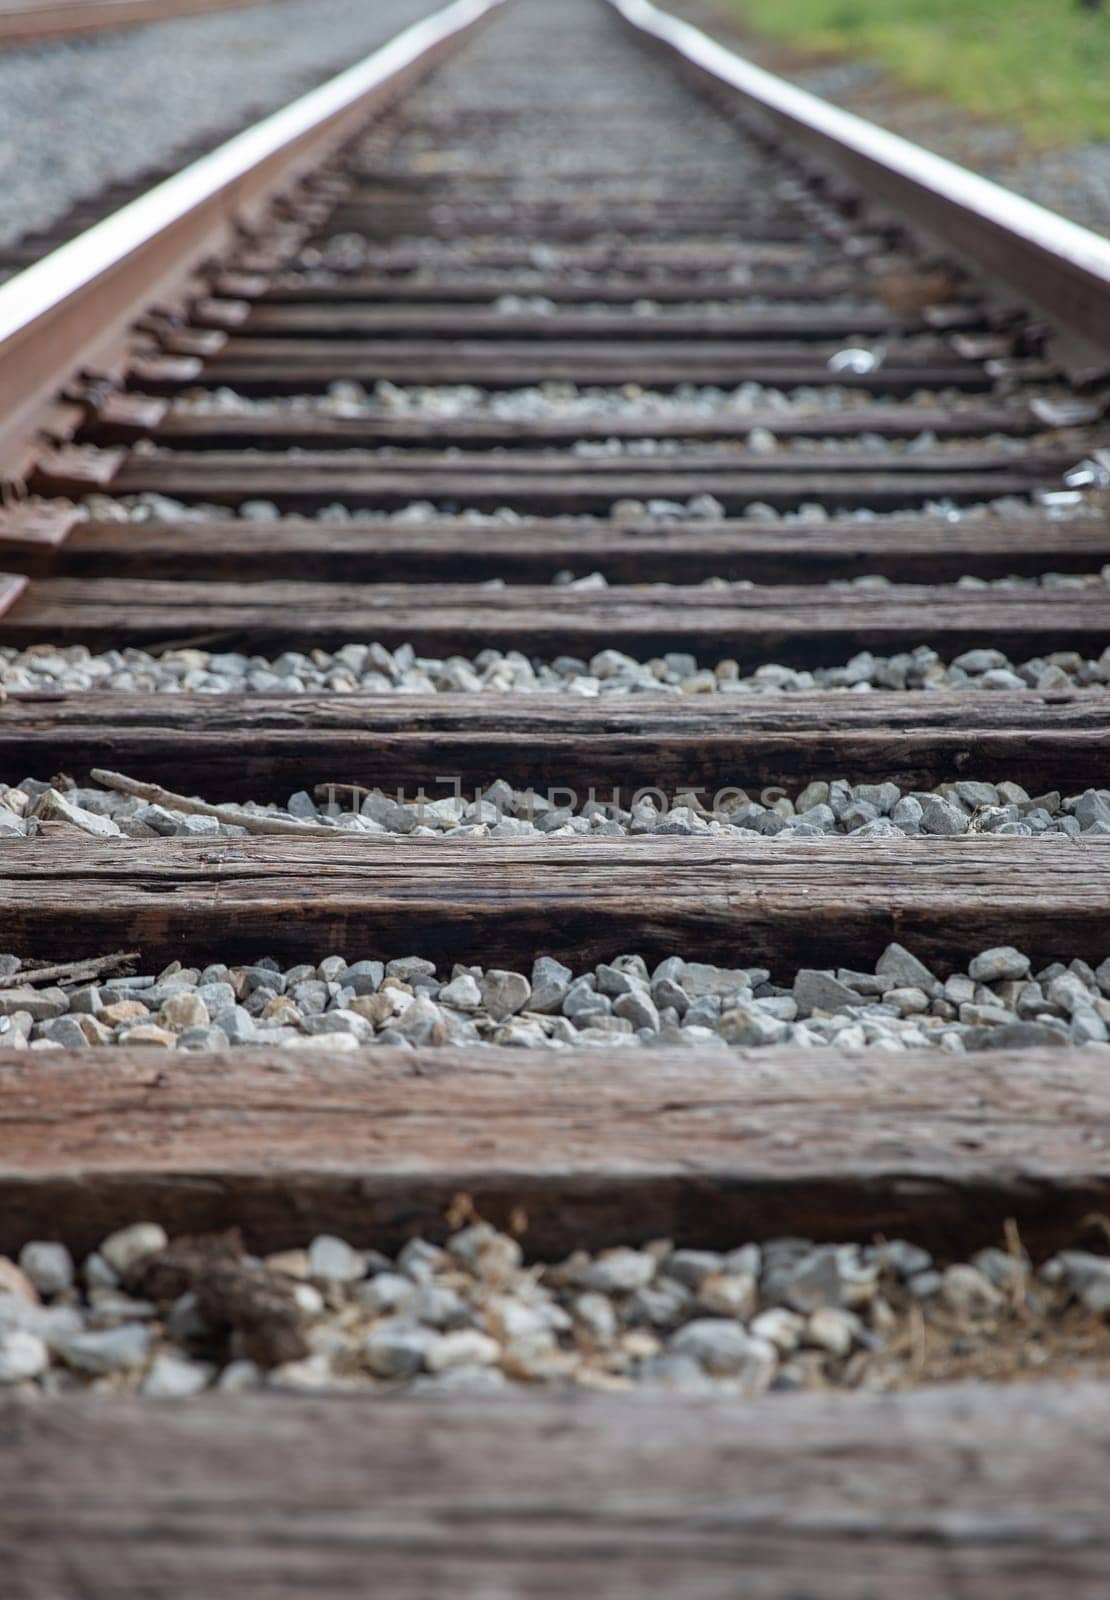 Rail Road tracks into the horizon by TopCreativePhotography